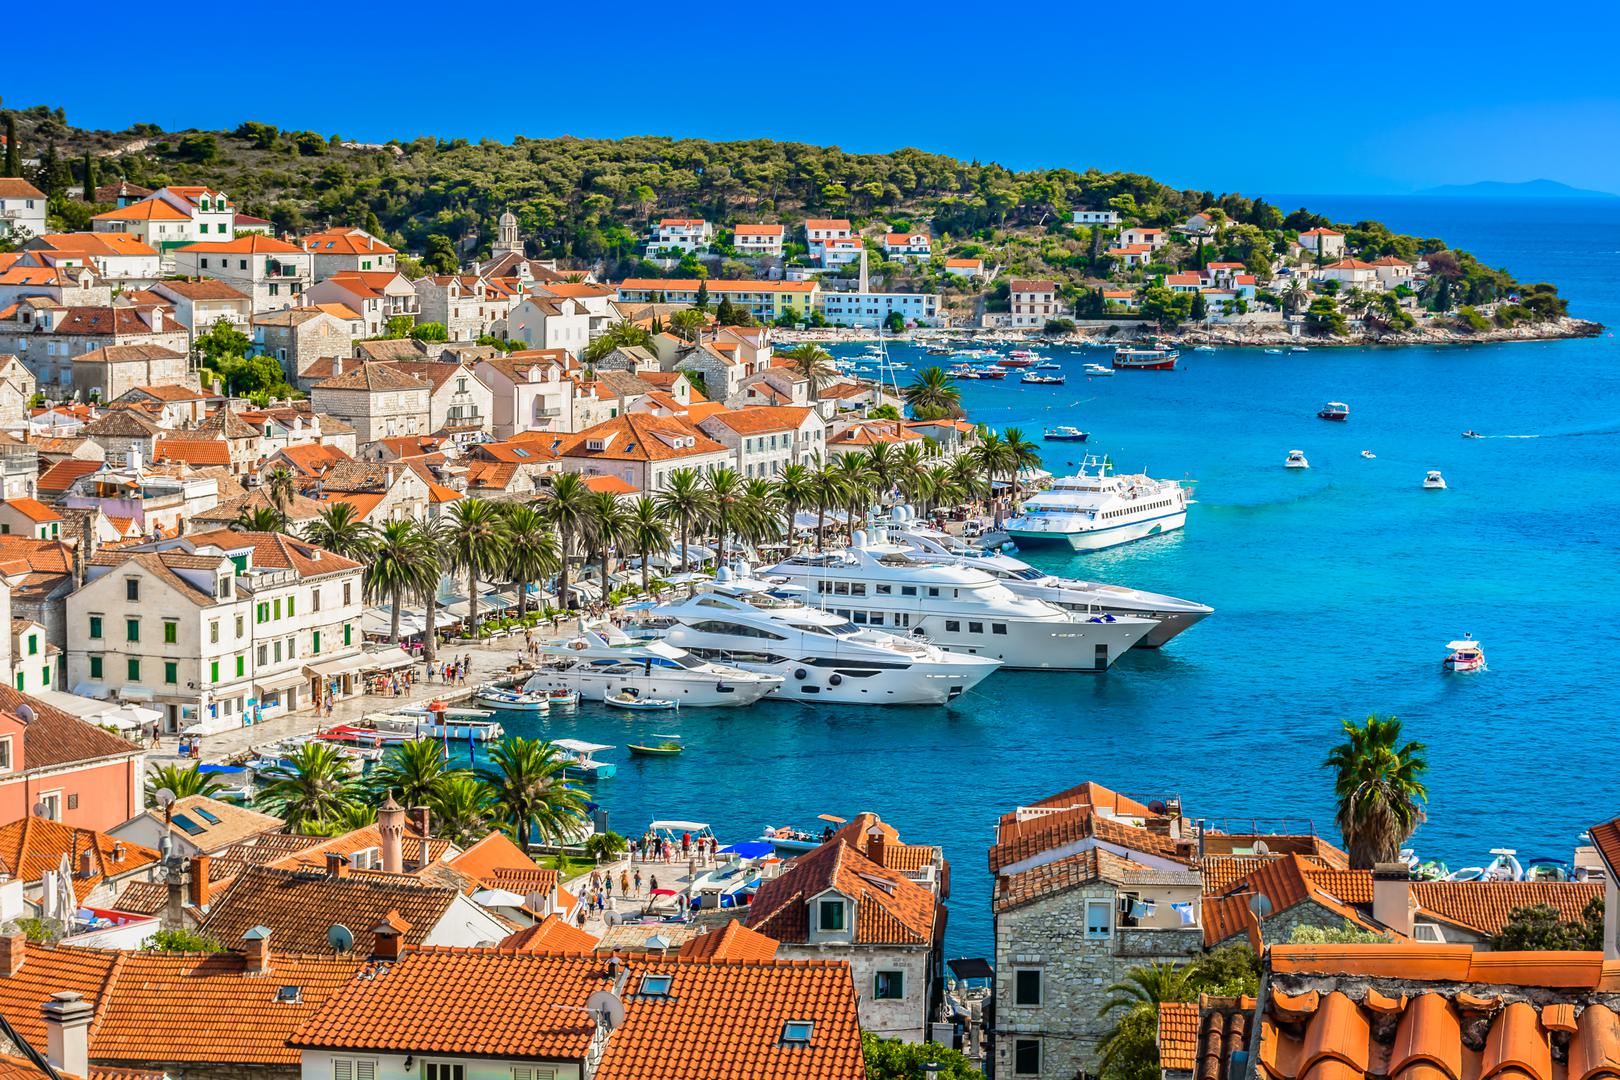 Hvar je najsunčaniji otok u Hrvatskoj s oko 115 sunčanih dana u godini. Ovo je jedno od najljepših mjesta na svijetu sa svojim bijelim prekrasnim plažama i povijesnim zgradama oko gradova. Grad Hvar čuvaju zidine iz 13. stoljeća, tvrđava i skriva glavni trg izgrađen u doba renesanse.